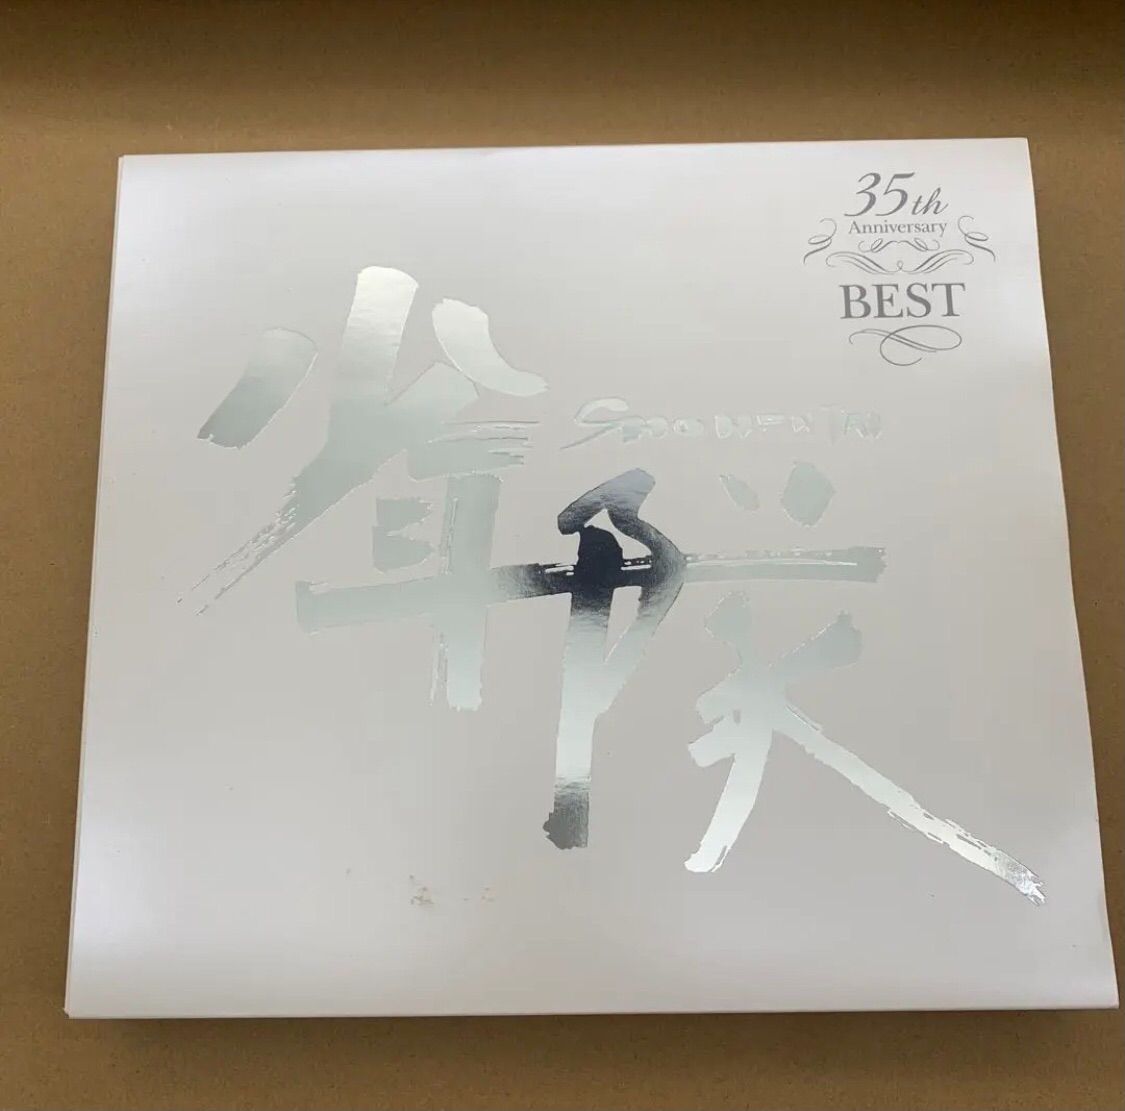 少年隊35th Anniversary BEST完全受注生産限定盤 - mazui - メルカリ